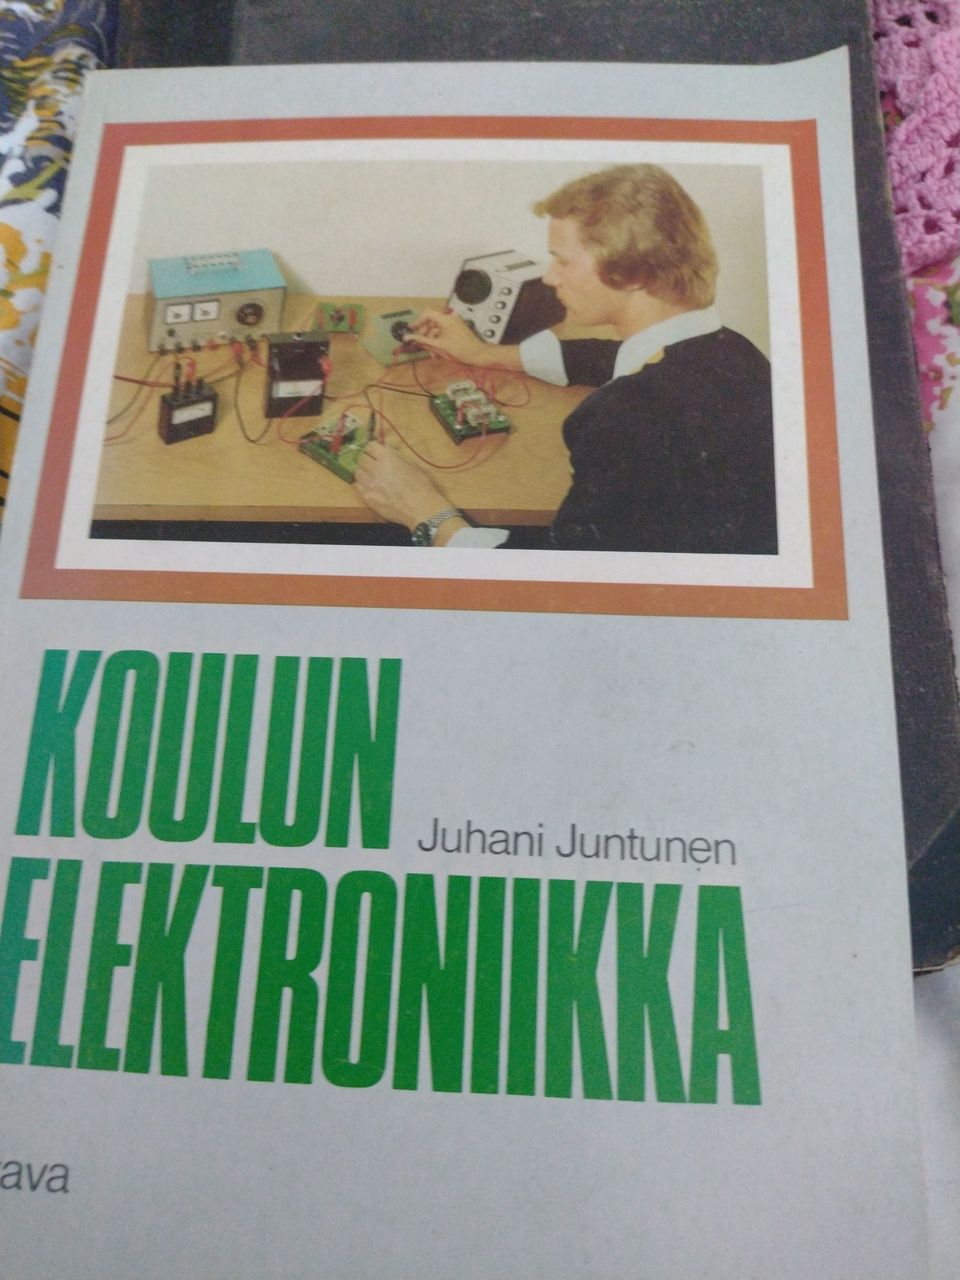 Juhani Juntunen: Koulun elektroniikka (1973)